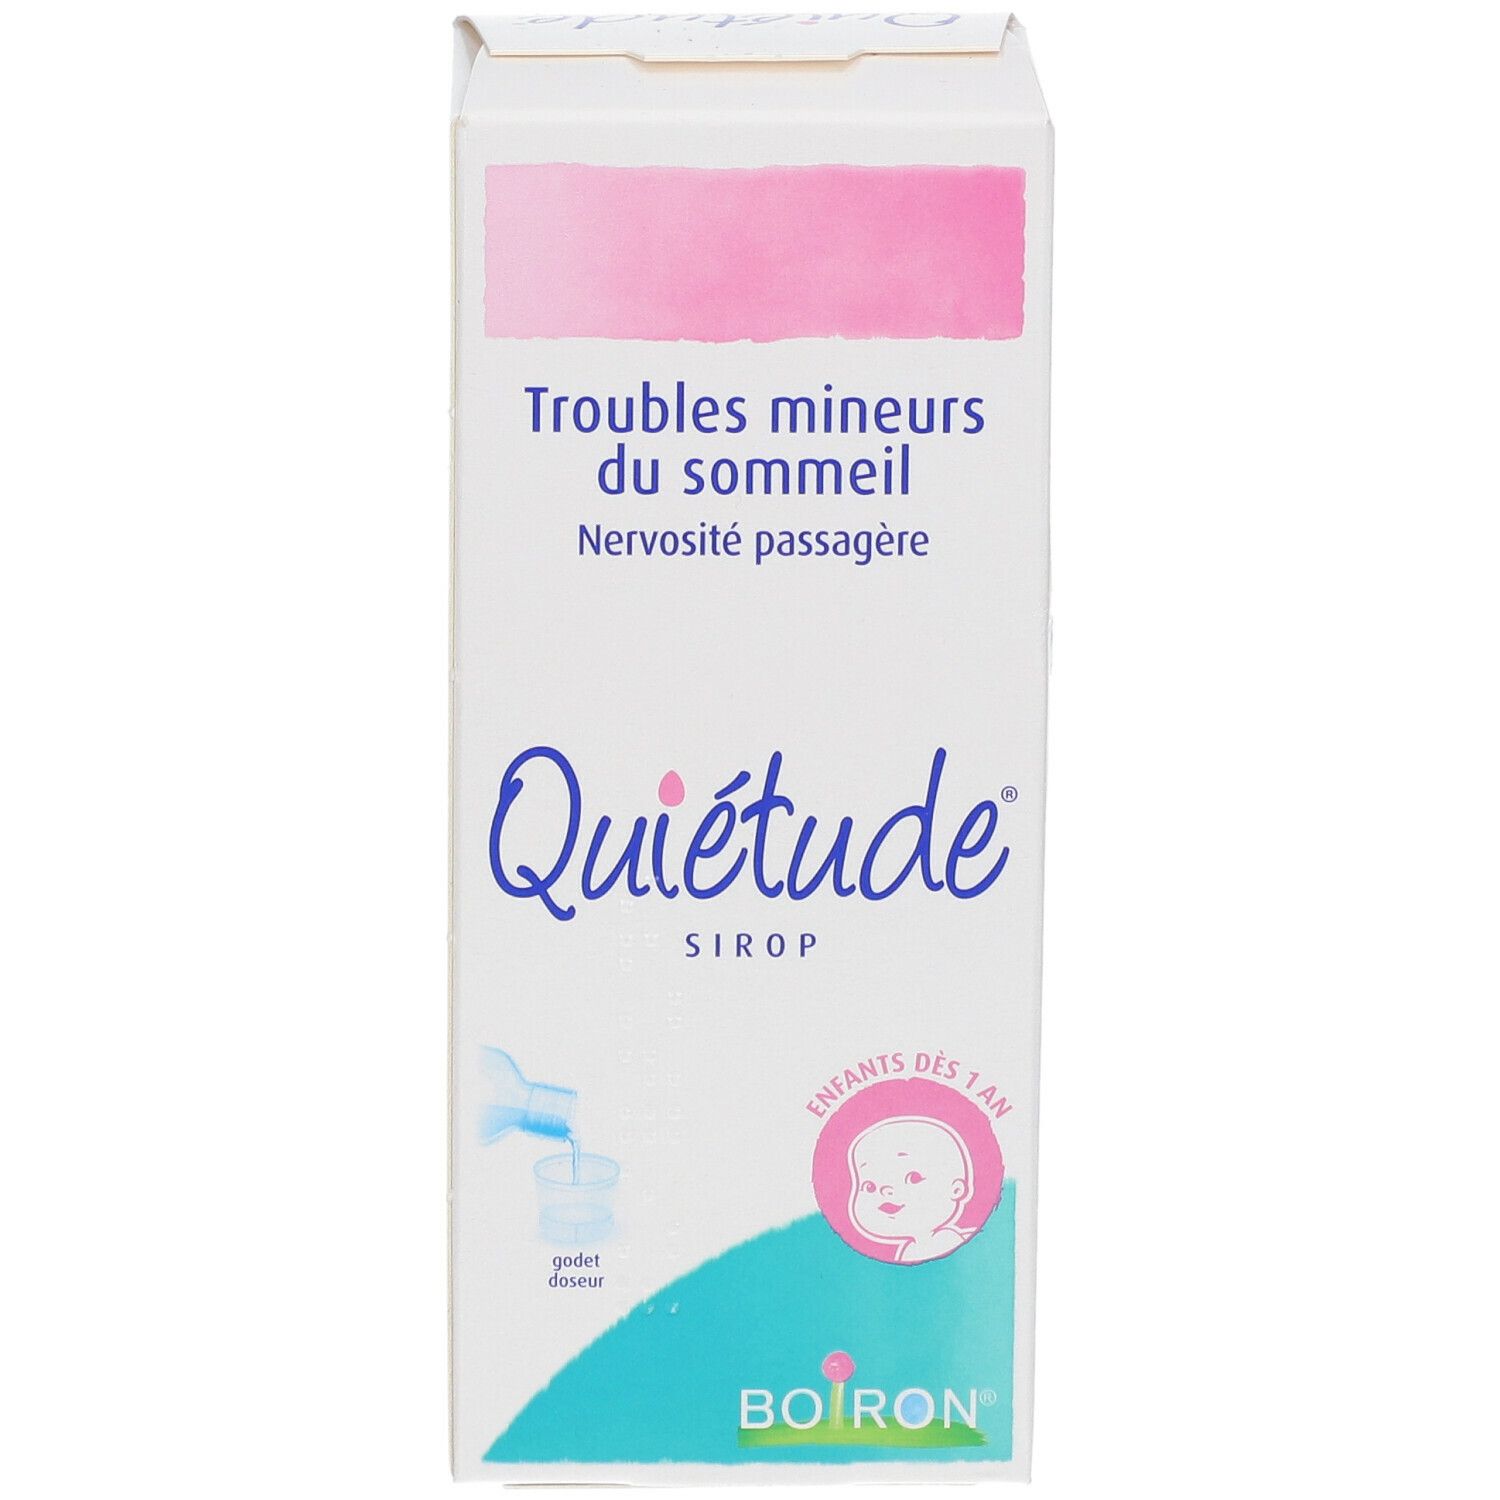 Boiron Quietude®